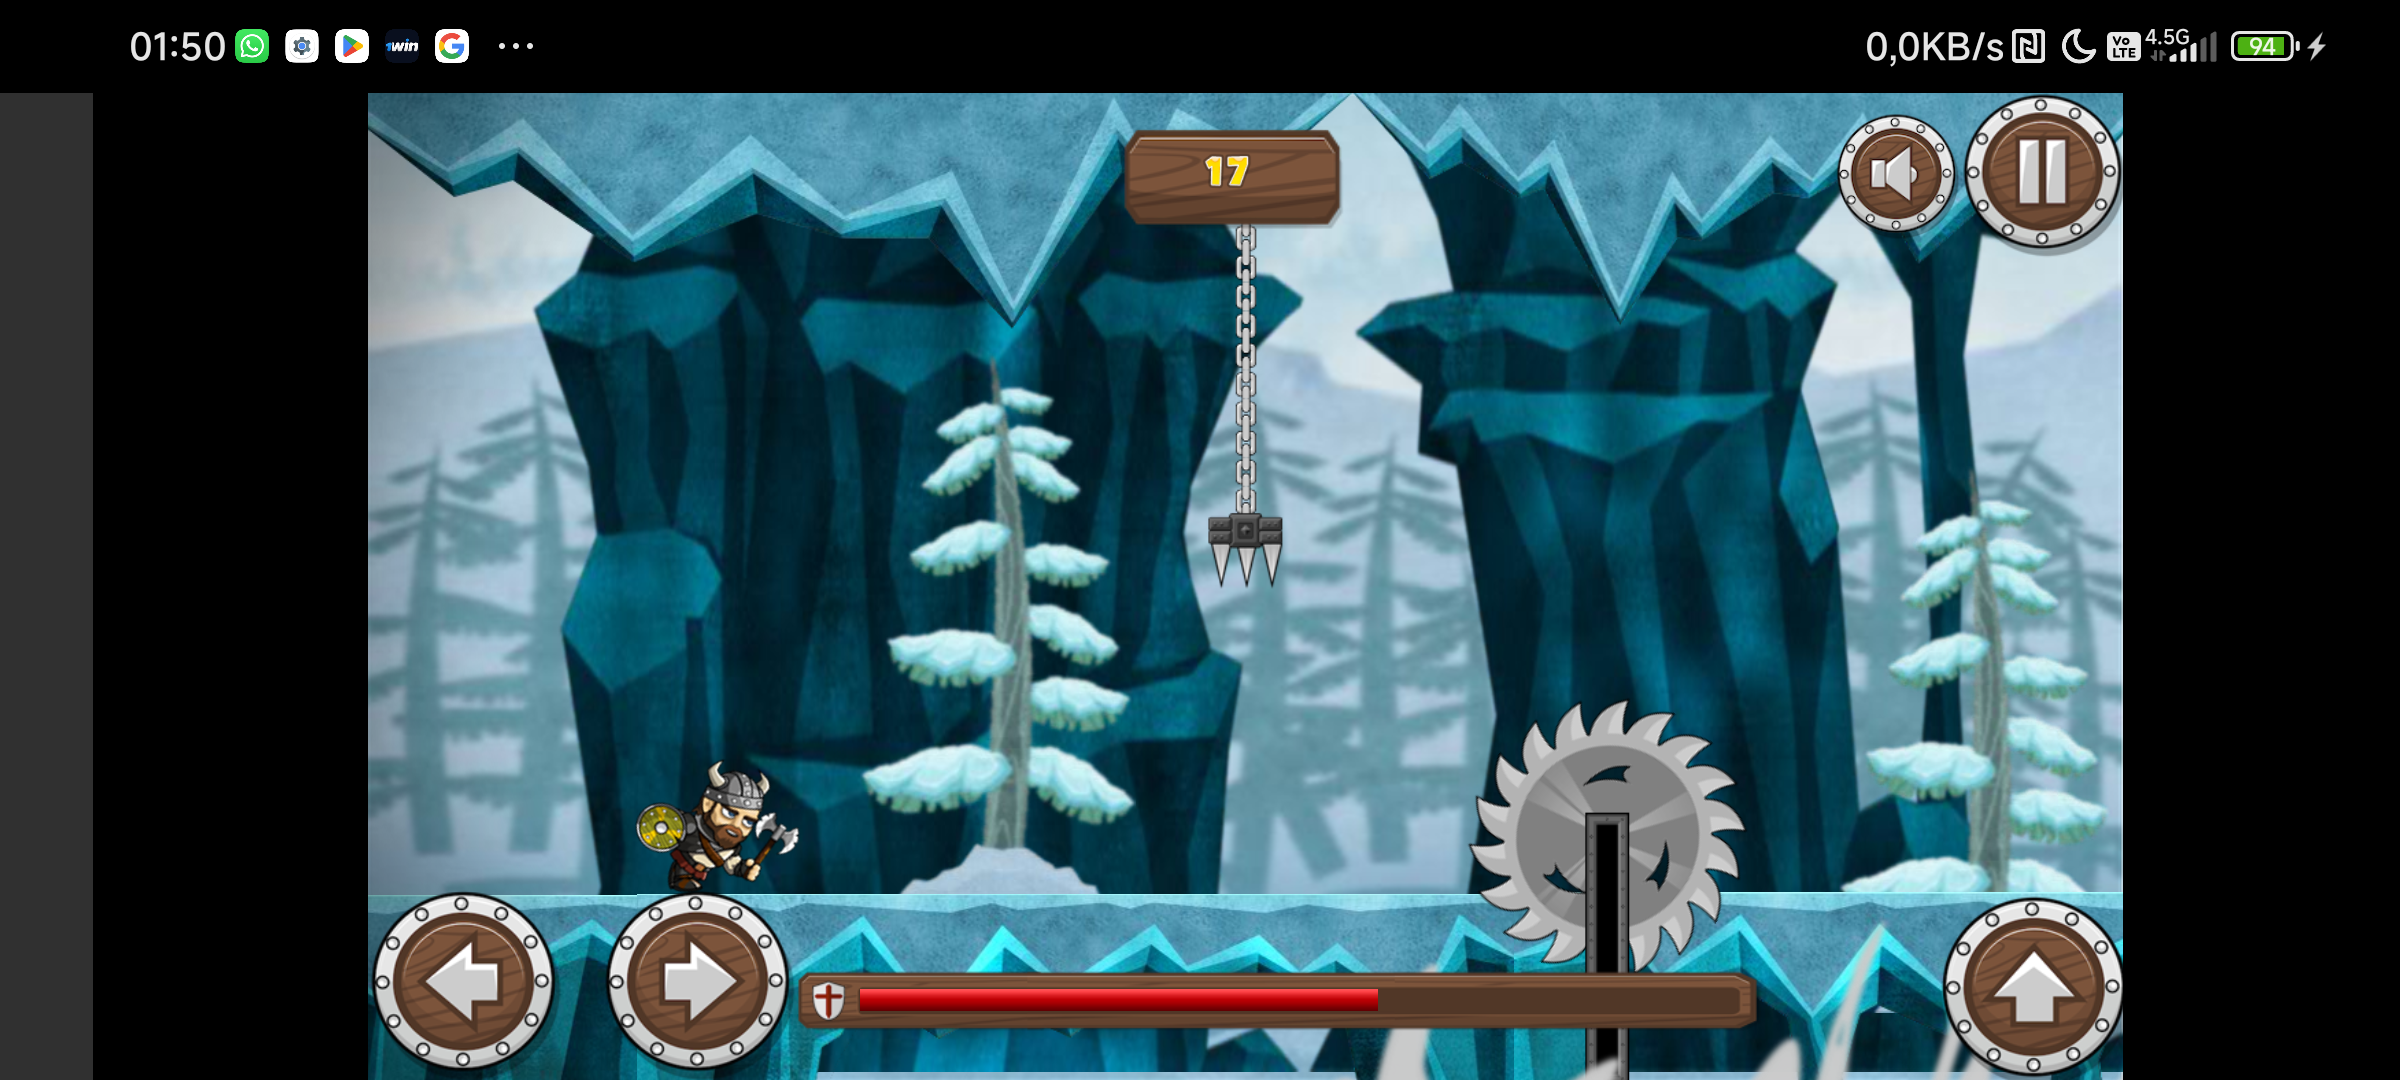 Screenshot 1 of Viking Road 2.1.0